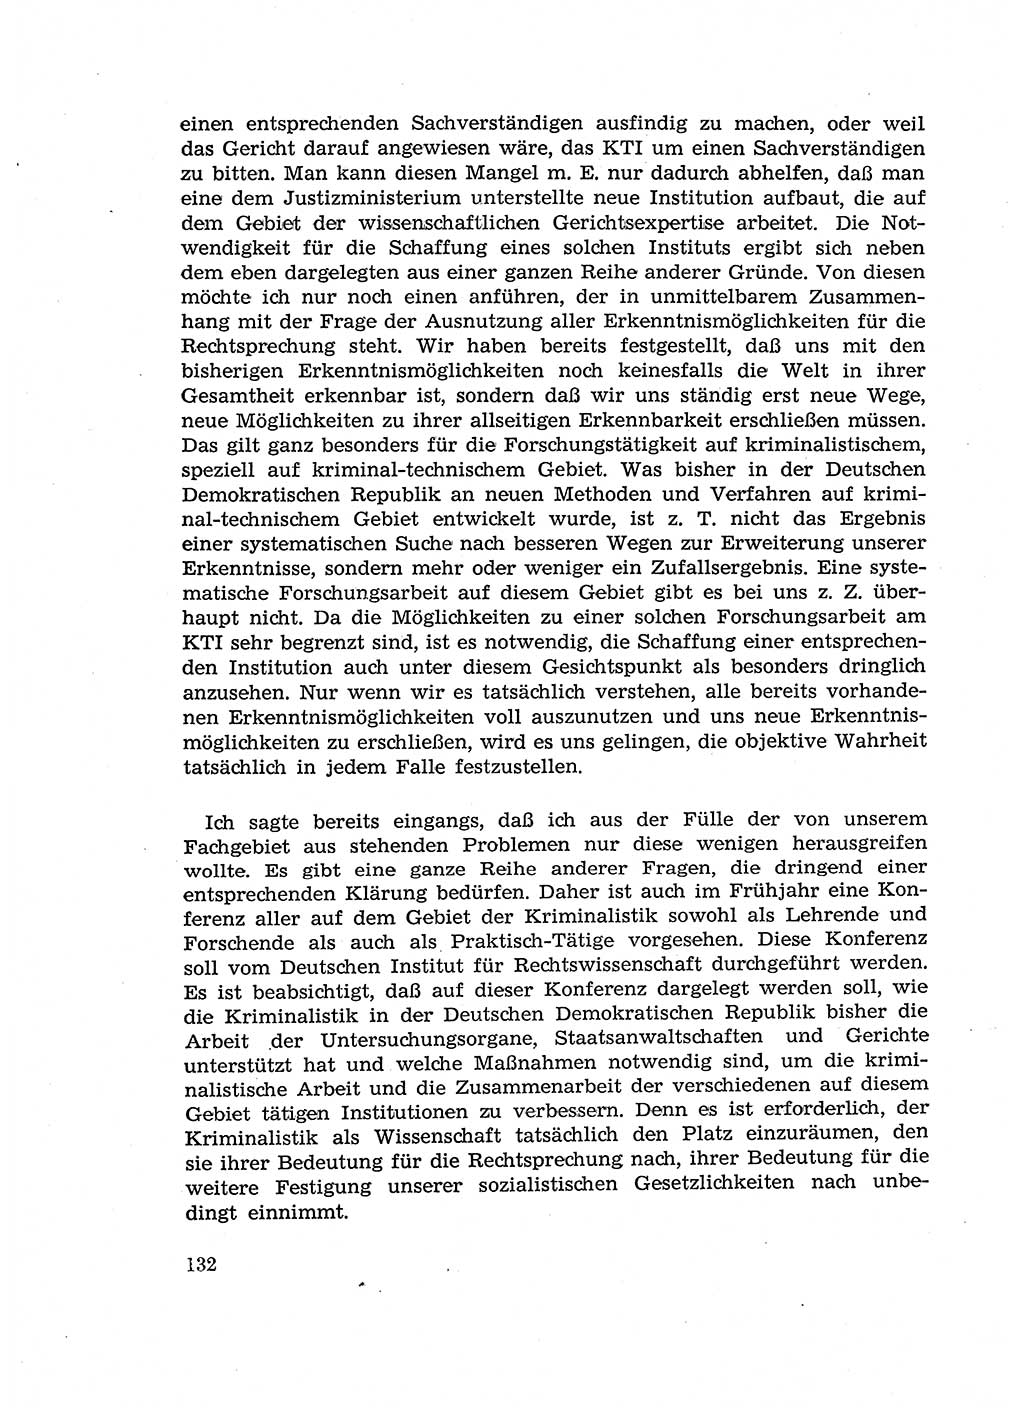 Fragen des Beweisrechts im Strafprozess [Deutsche Demokratische Republik (DDR)] 1956, Seite 132 (Fr. BeweisR. Str.-Proz. DDR 1956, S. 132)